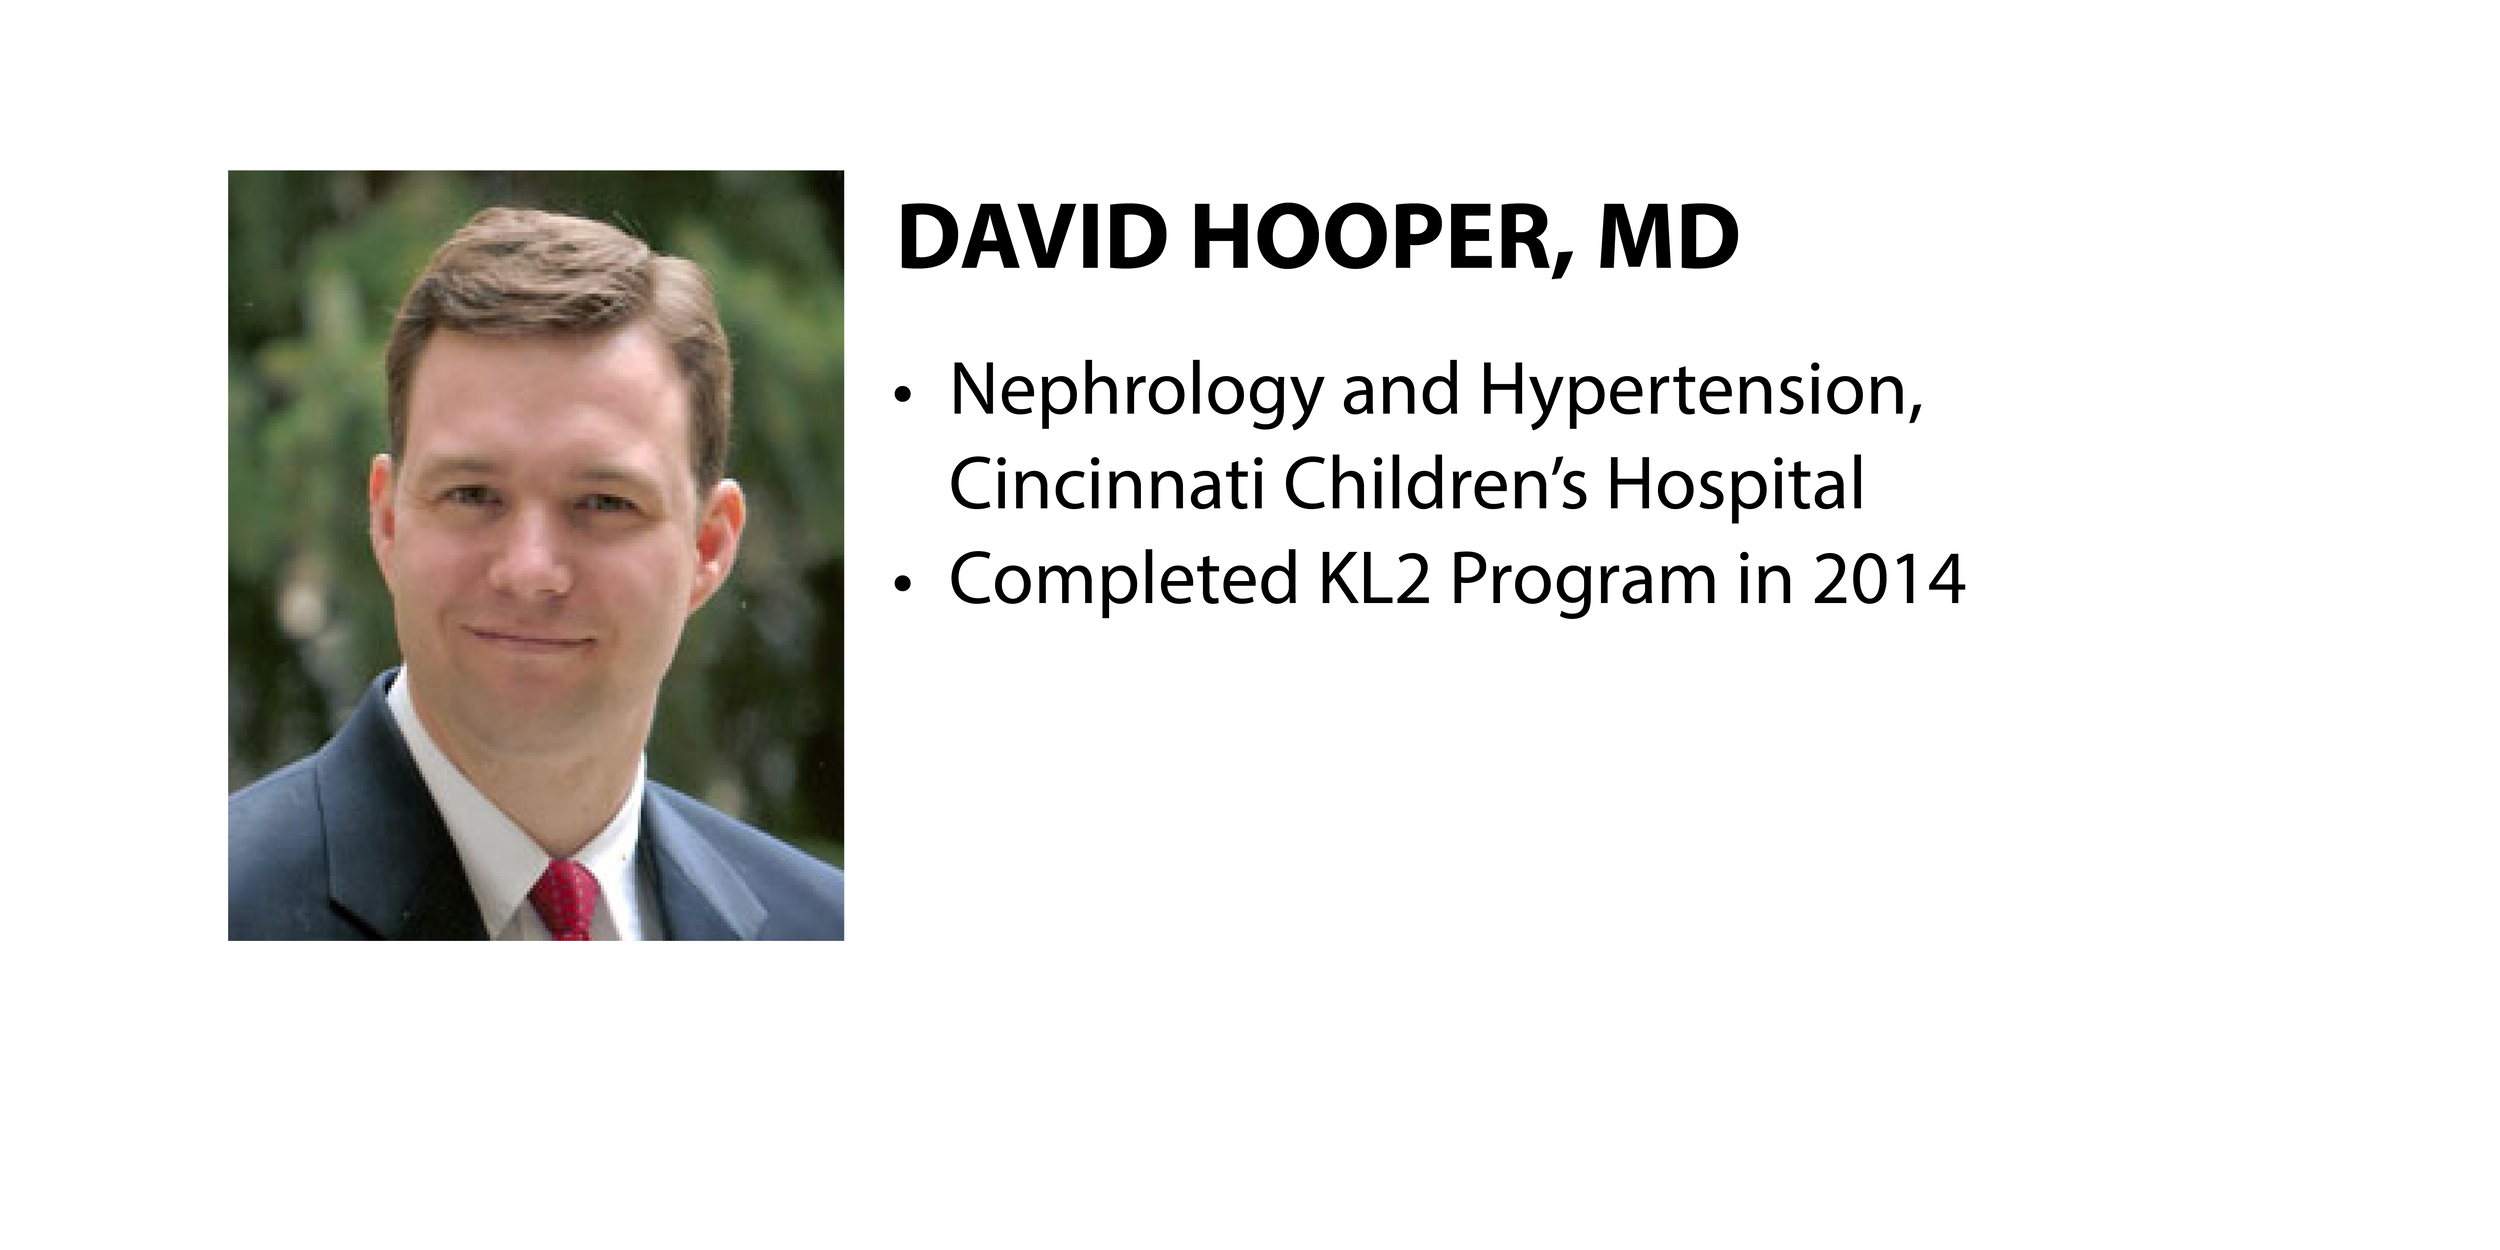 K Scholar Overview: David Hopper